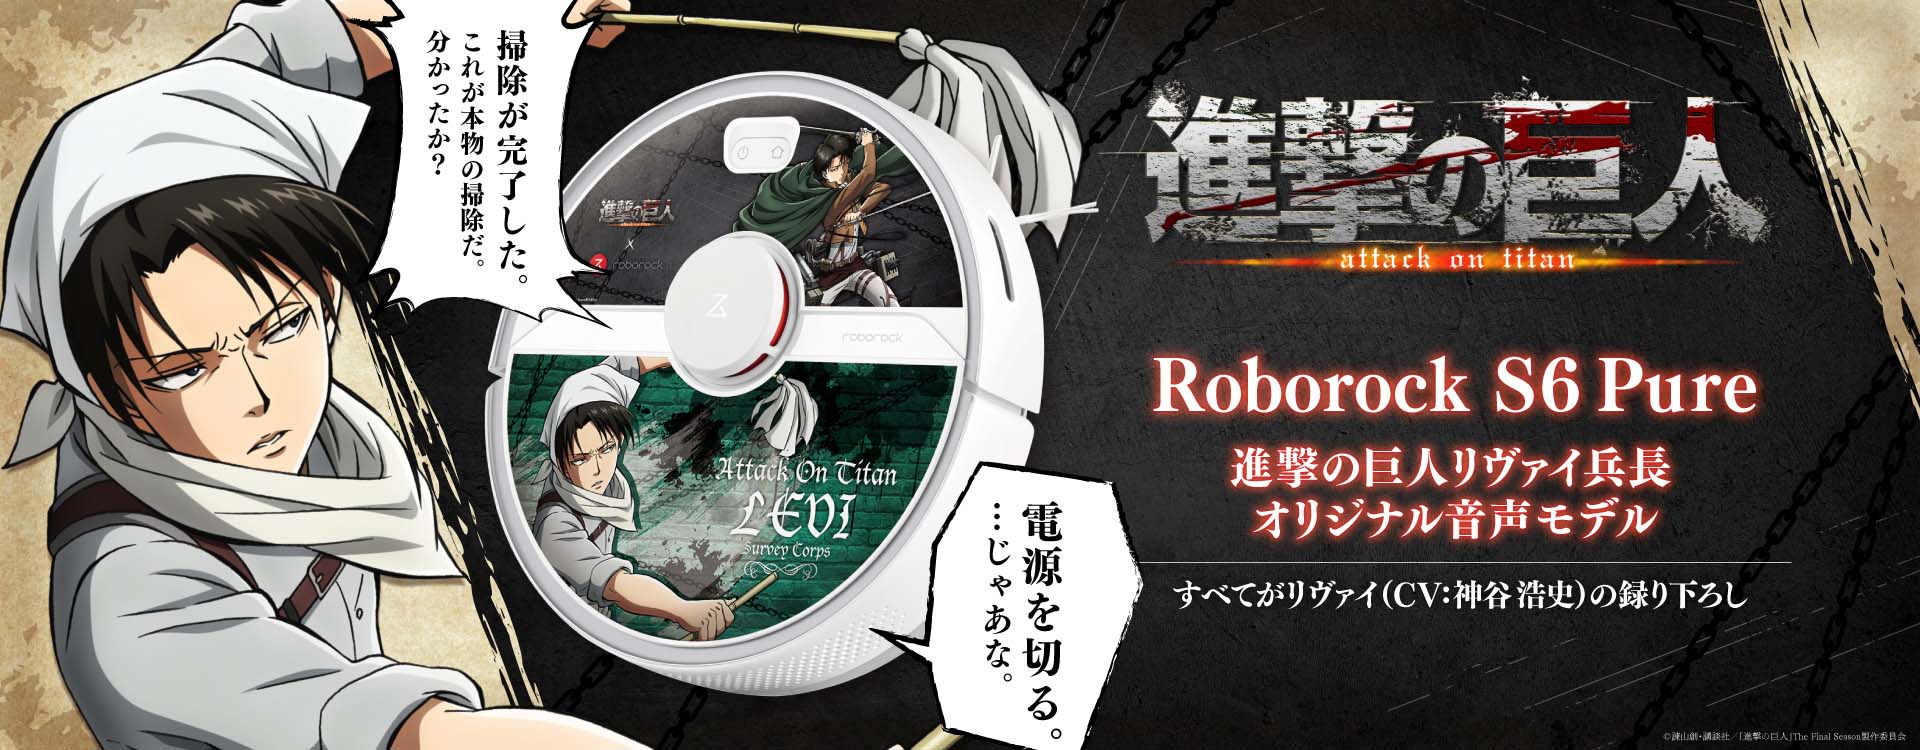 進撃の巨人 リヴァイ兵長の声で動く ロボット掃除機 Roborock S6 Pure コラボモデルが本日発売 Game Watch